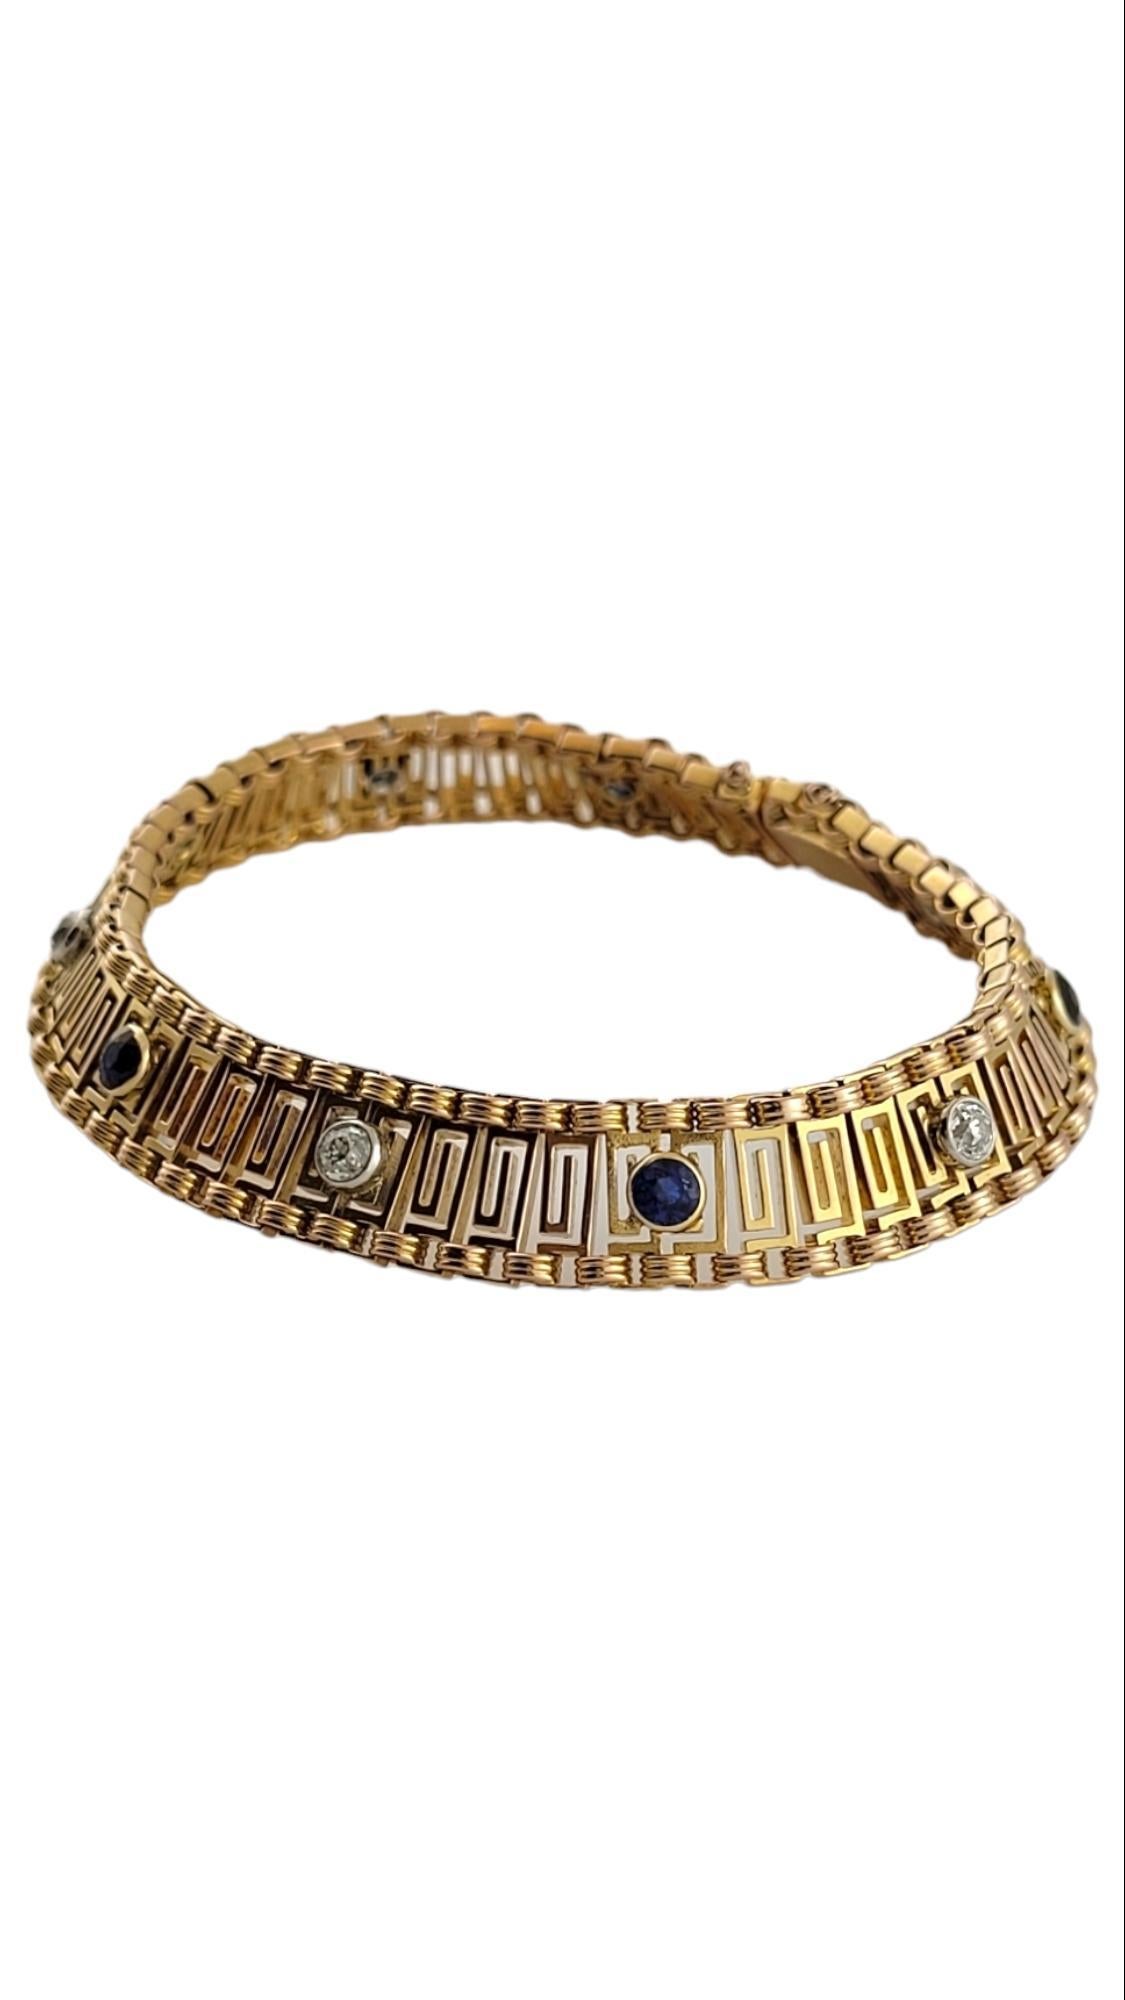  Antikes Armband aus 18K Gelbgold mit Diamanten

Dieses wunderschöne antike Armband ist aus 18K Gelbgold mit 5 funkelnden Diamanten im Minenschliff und 5 schönen blauen Steinen gefertigt!

Ungefähres Gesamtgewicht der Diamanten: 0,50 Karat

Farbe